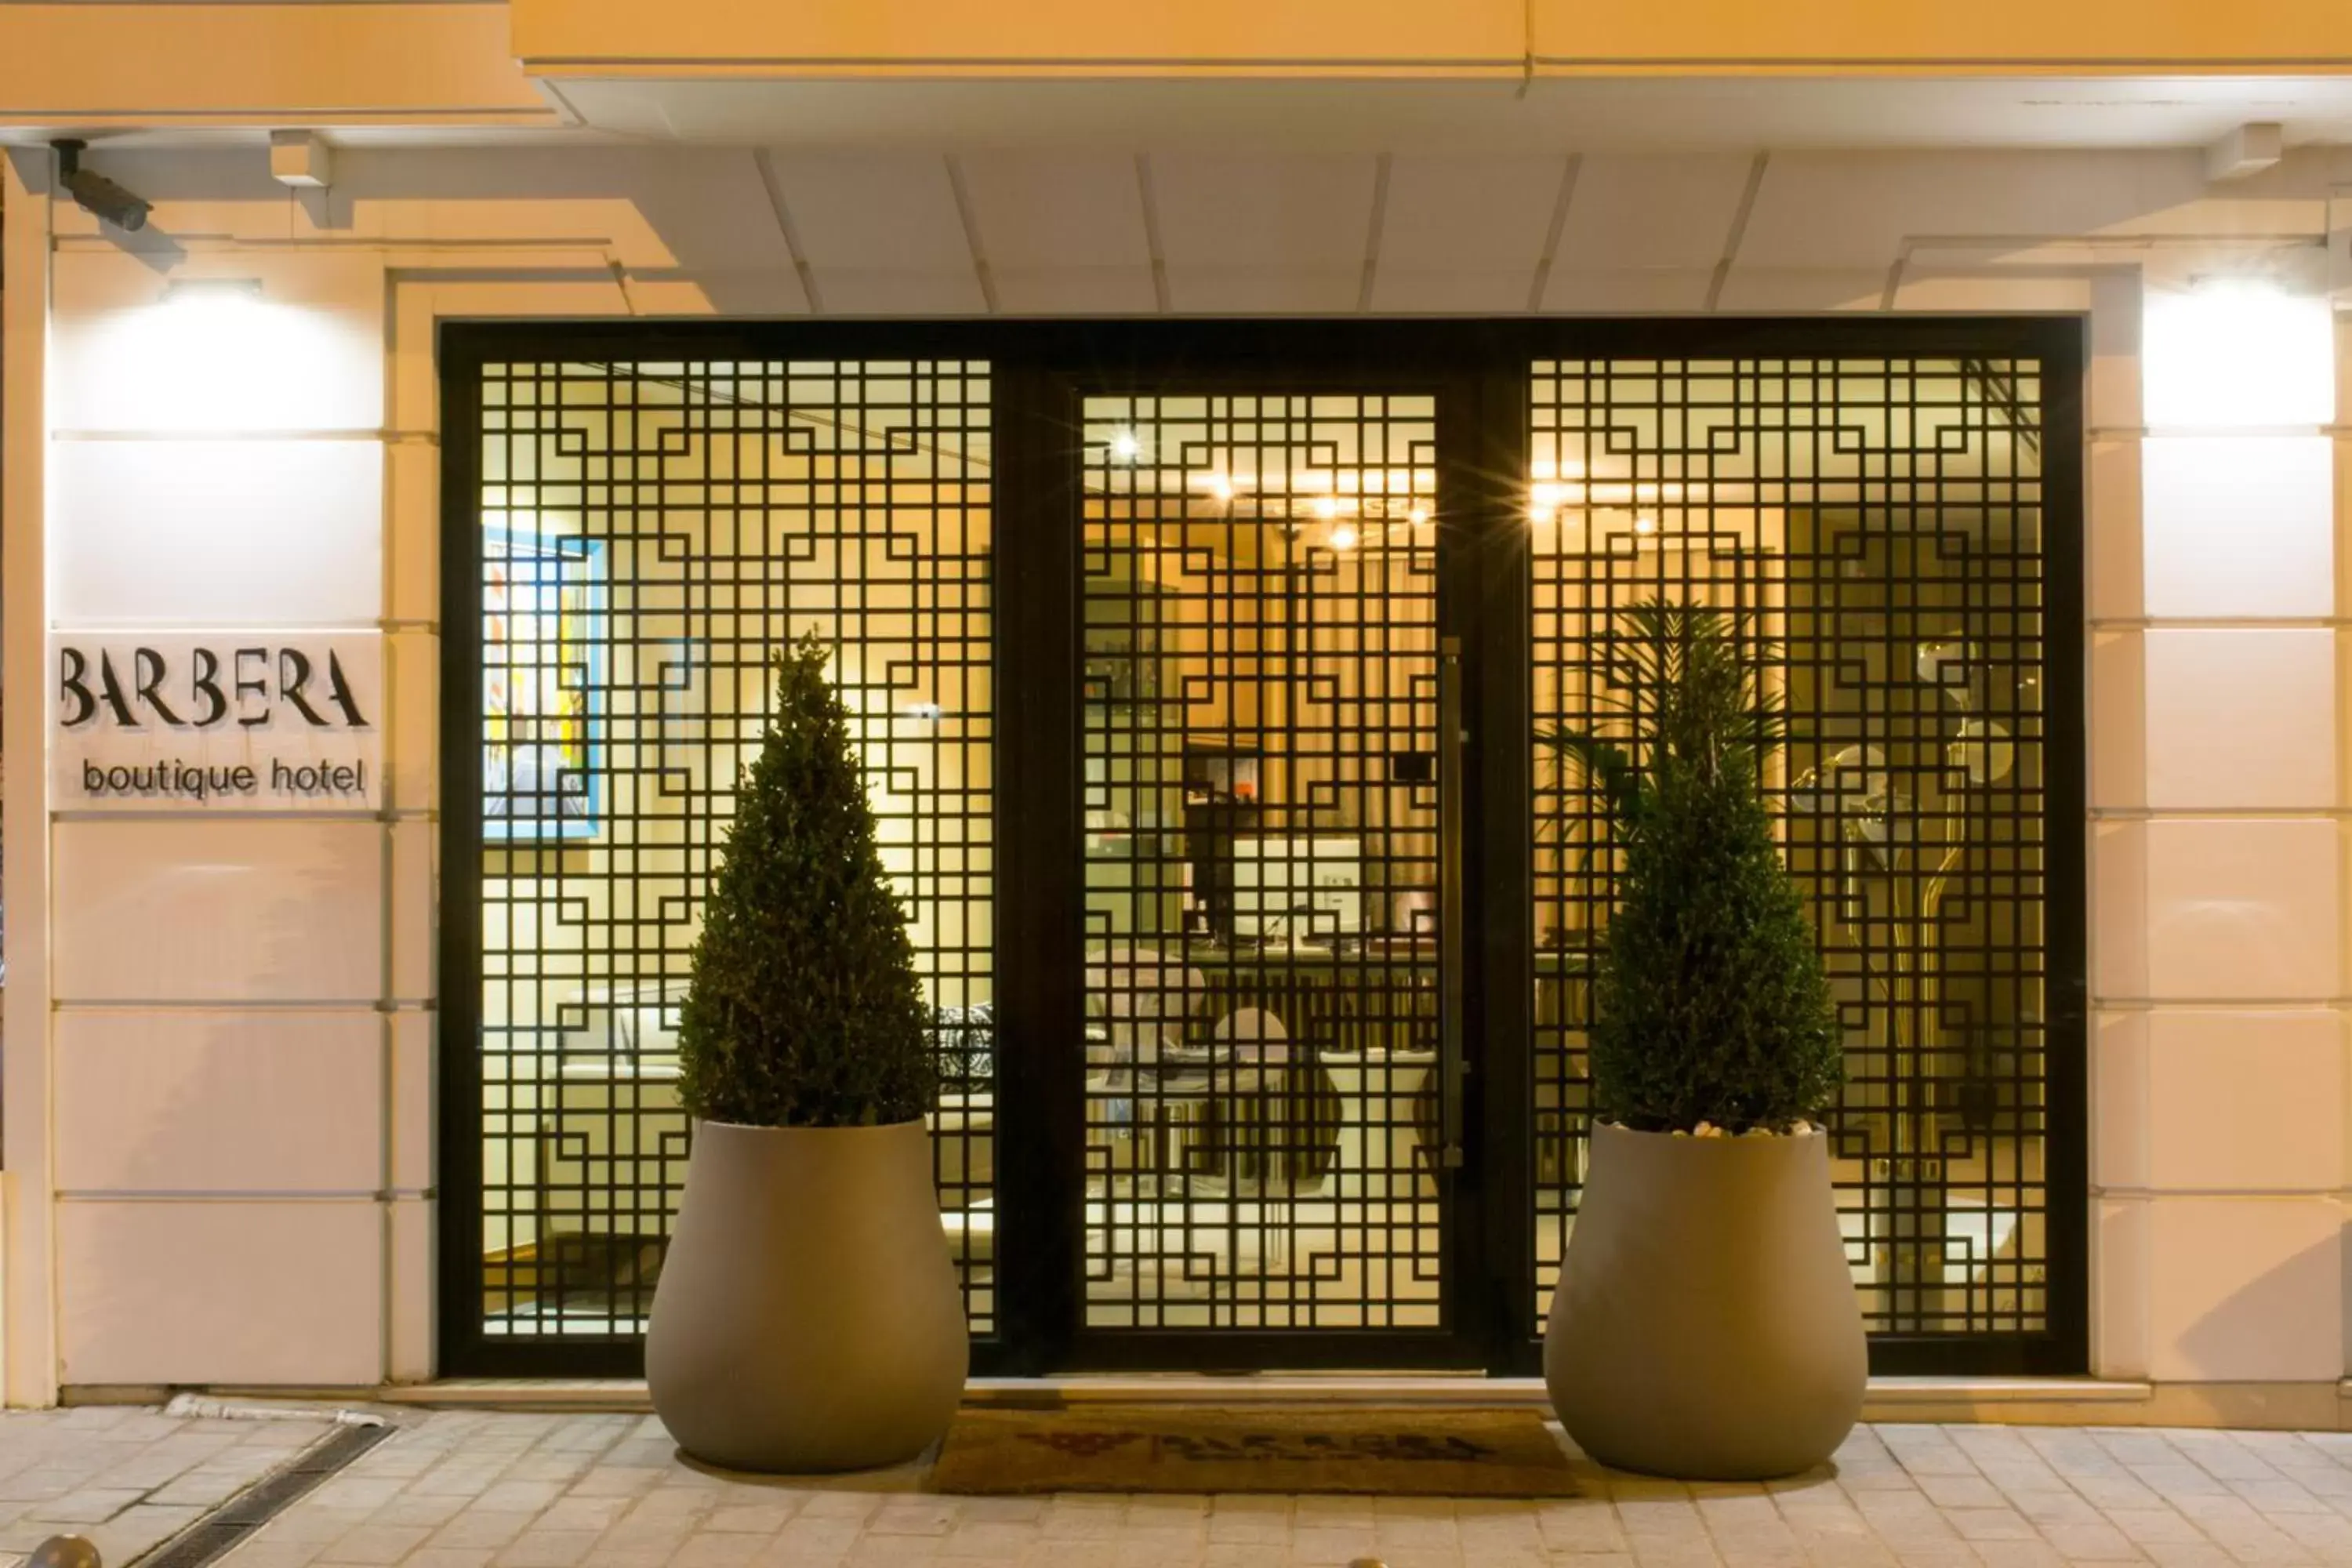 Facade/entrance in Barbera Hotel